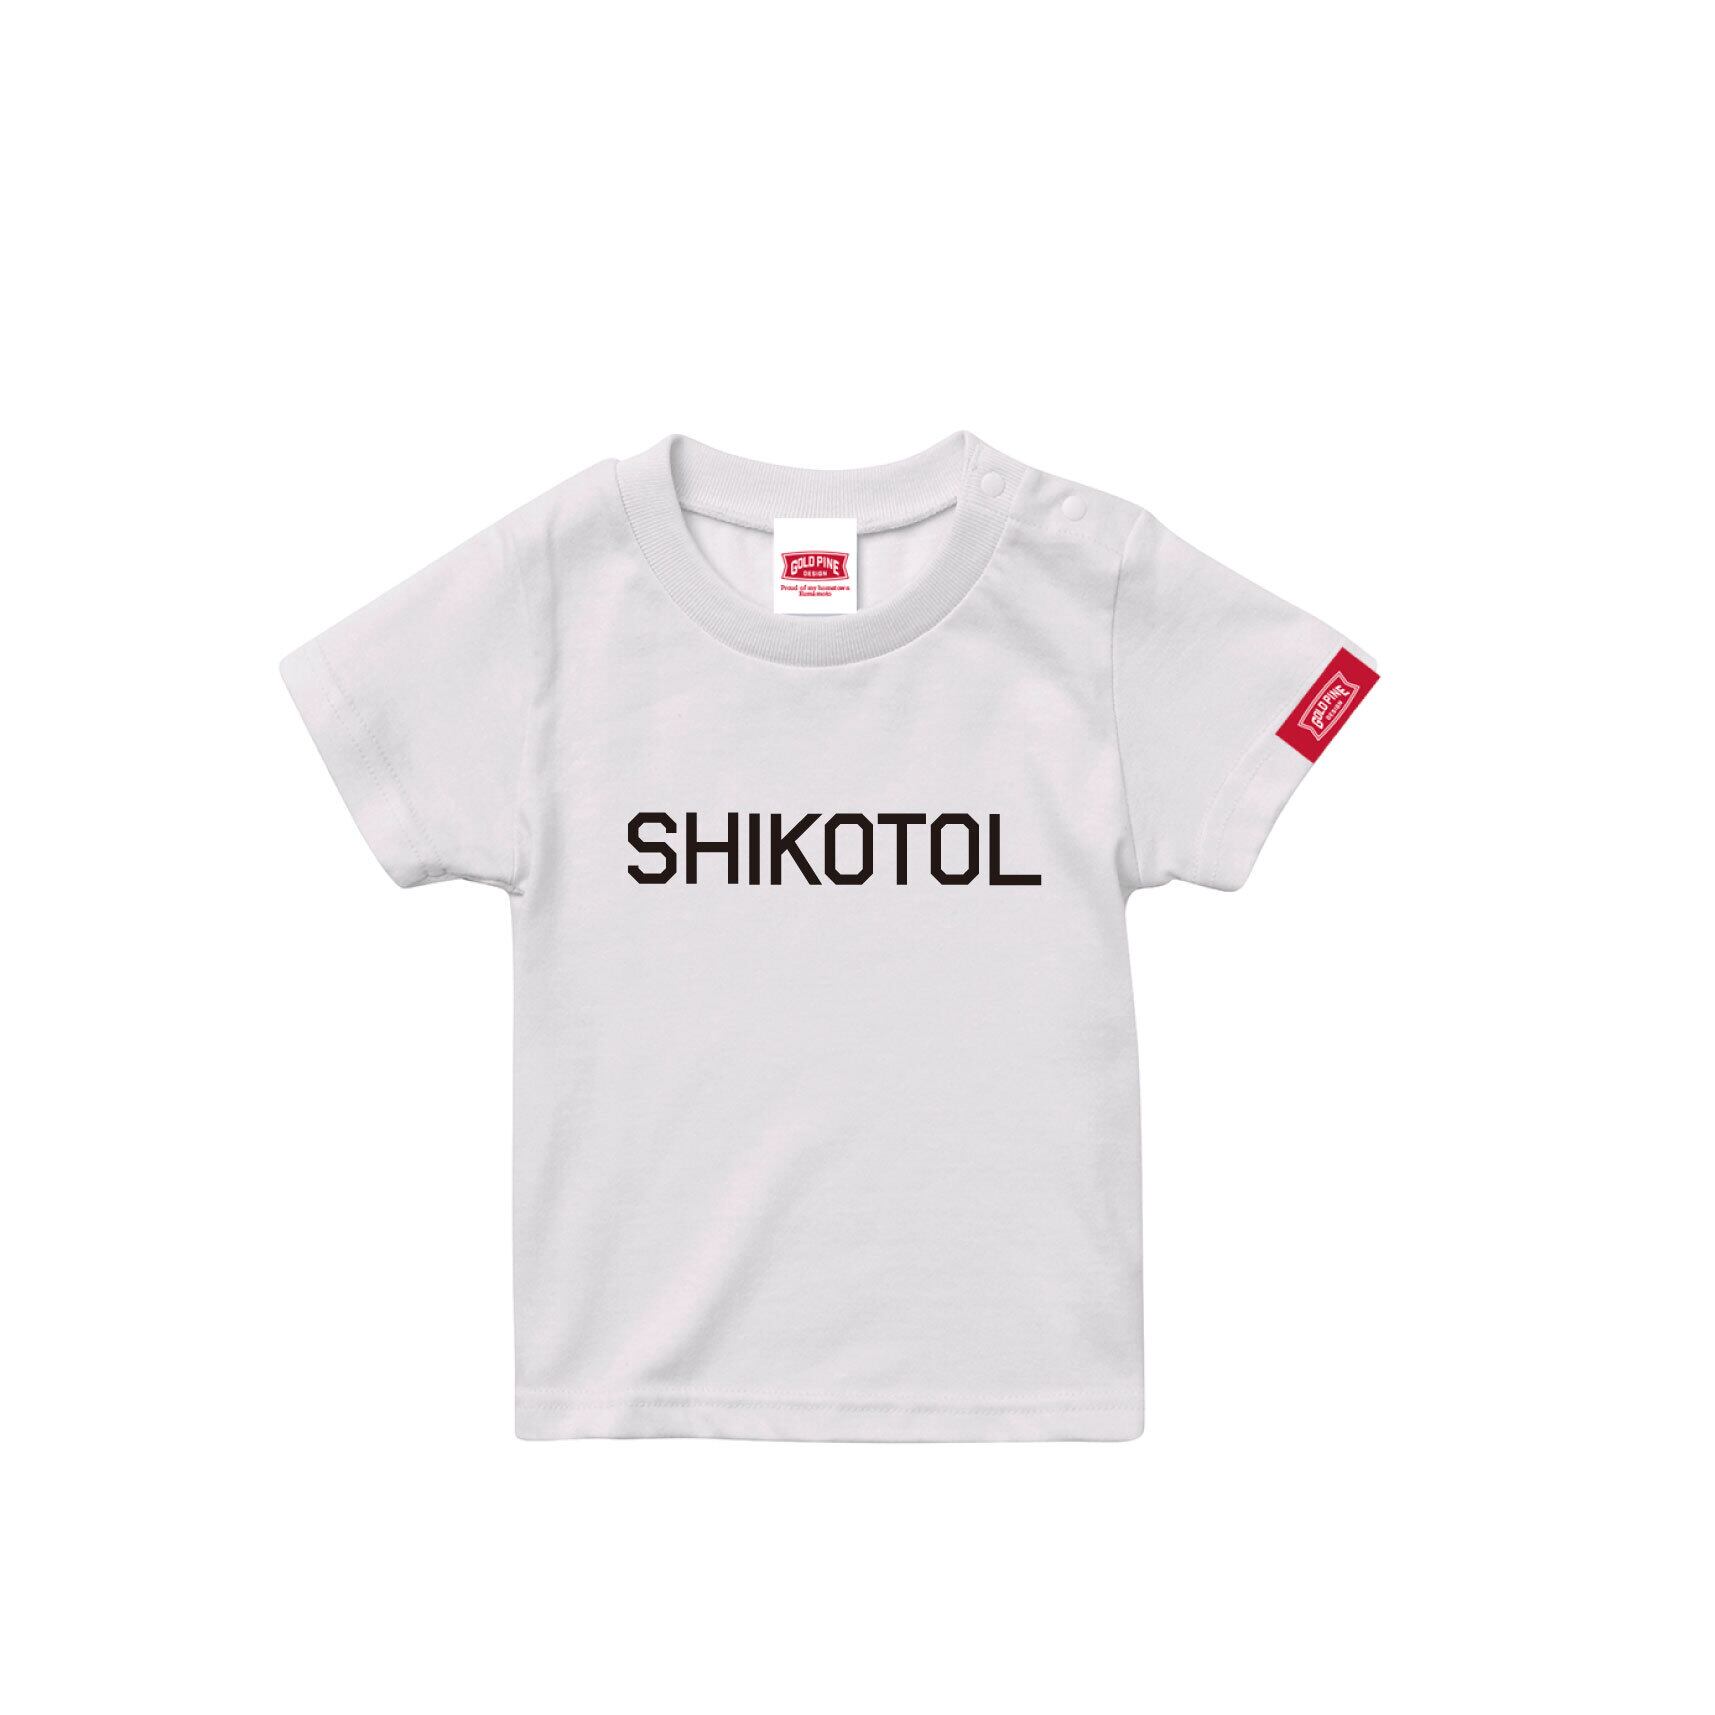 SHIKOTOL-Tshirt【Kids】White